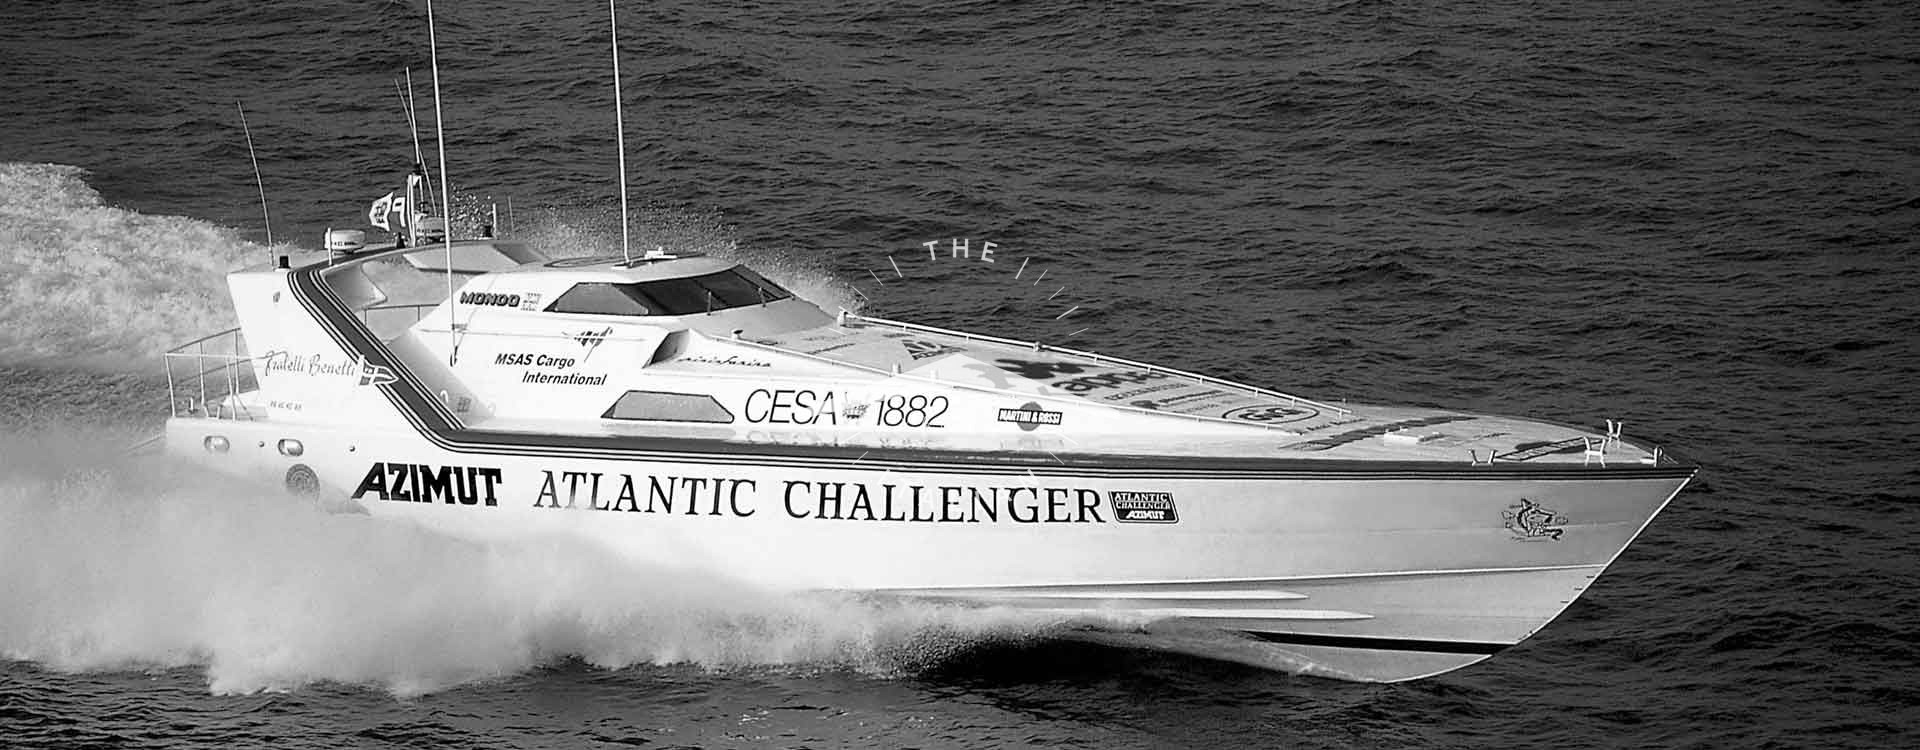  Atlantic Challenger